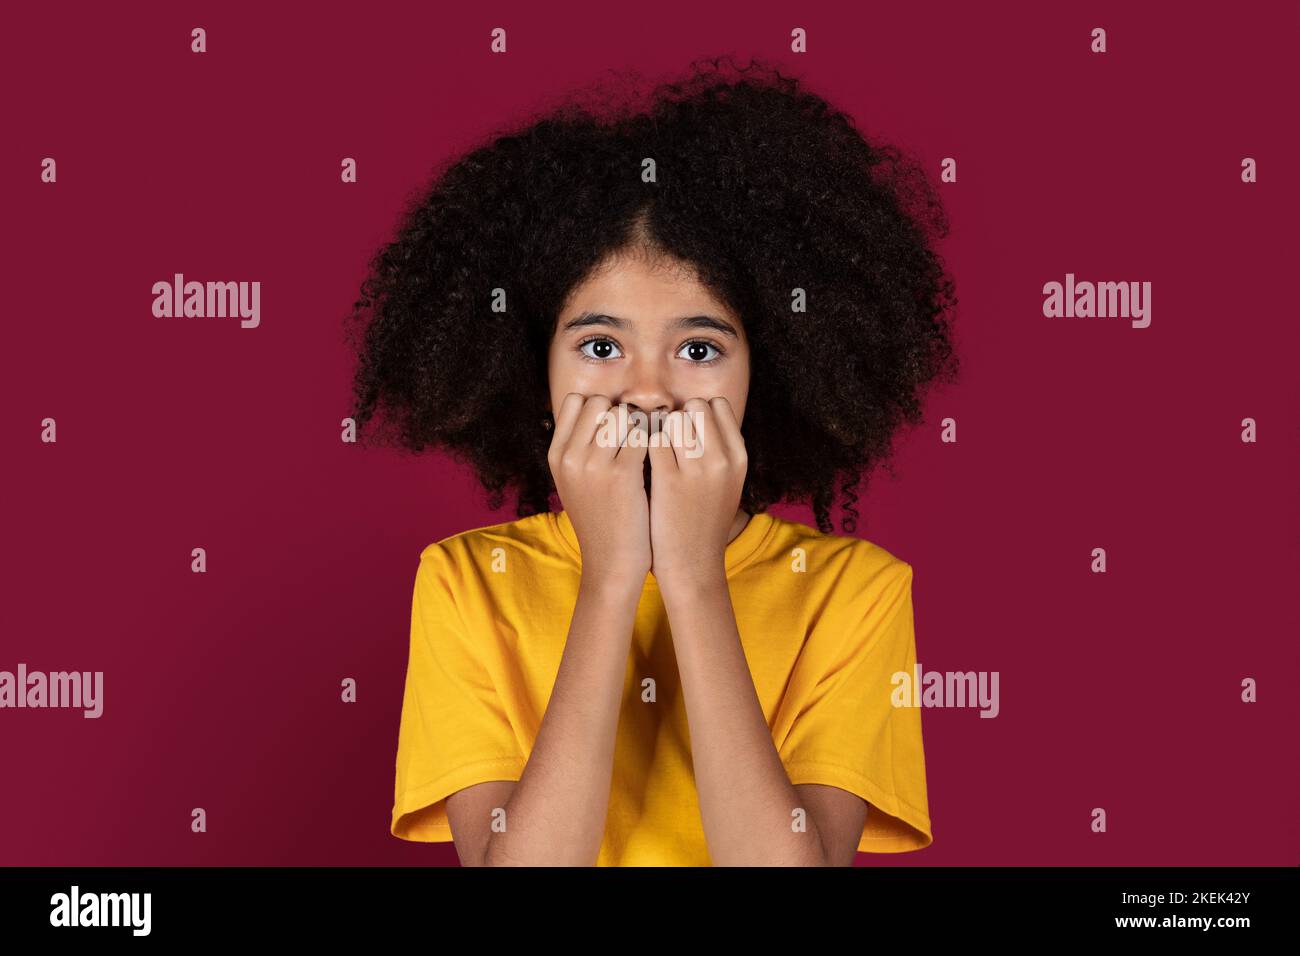 Un enfant afro-américain effrayé qui la couvre la bouche Banque D'Images